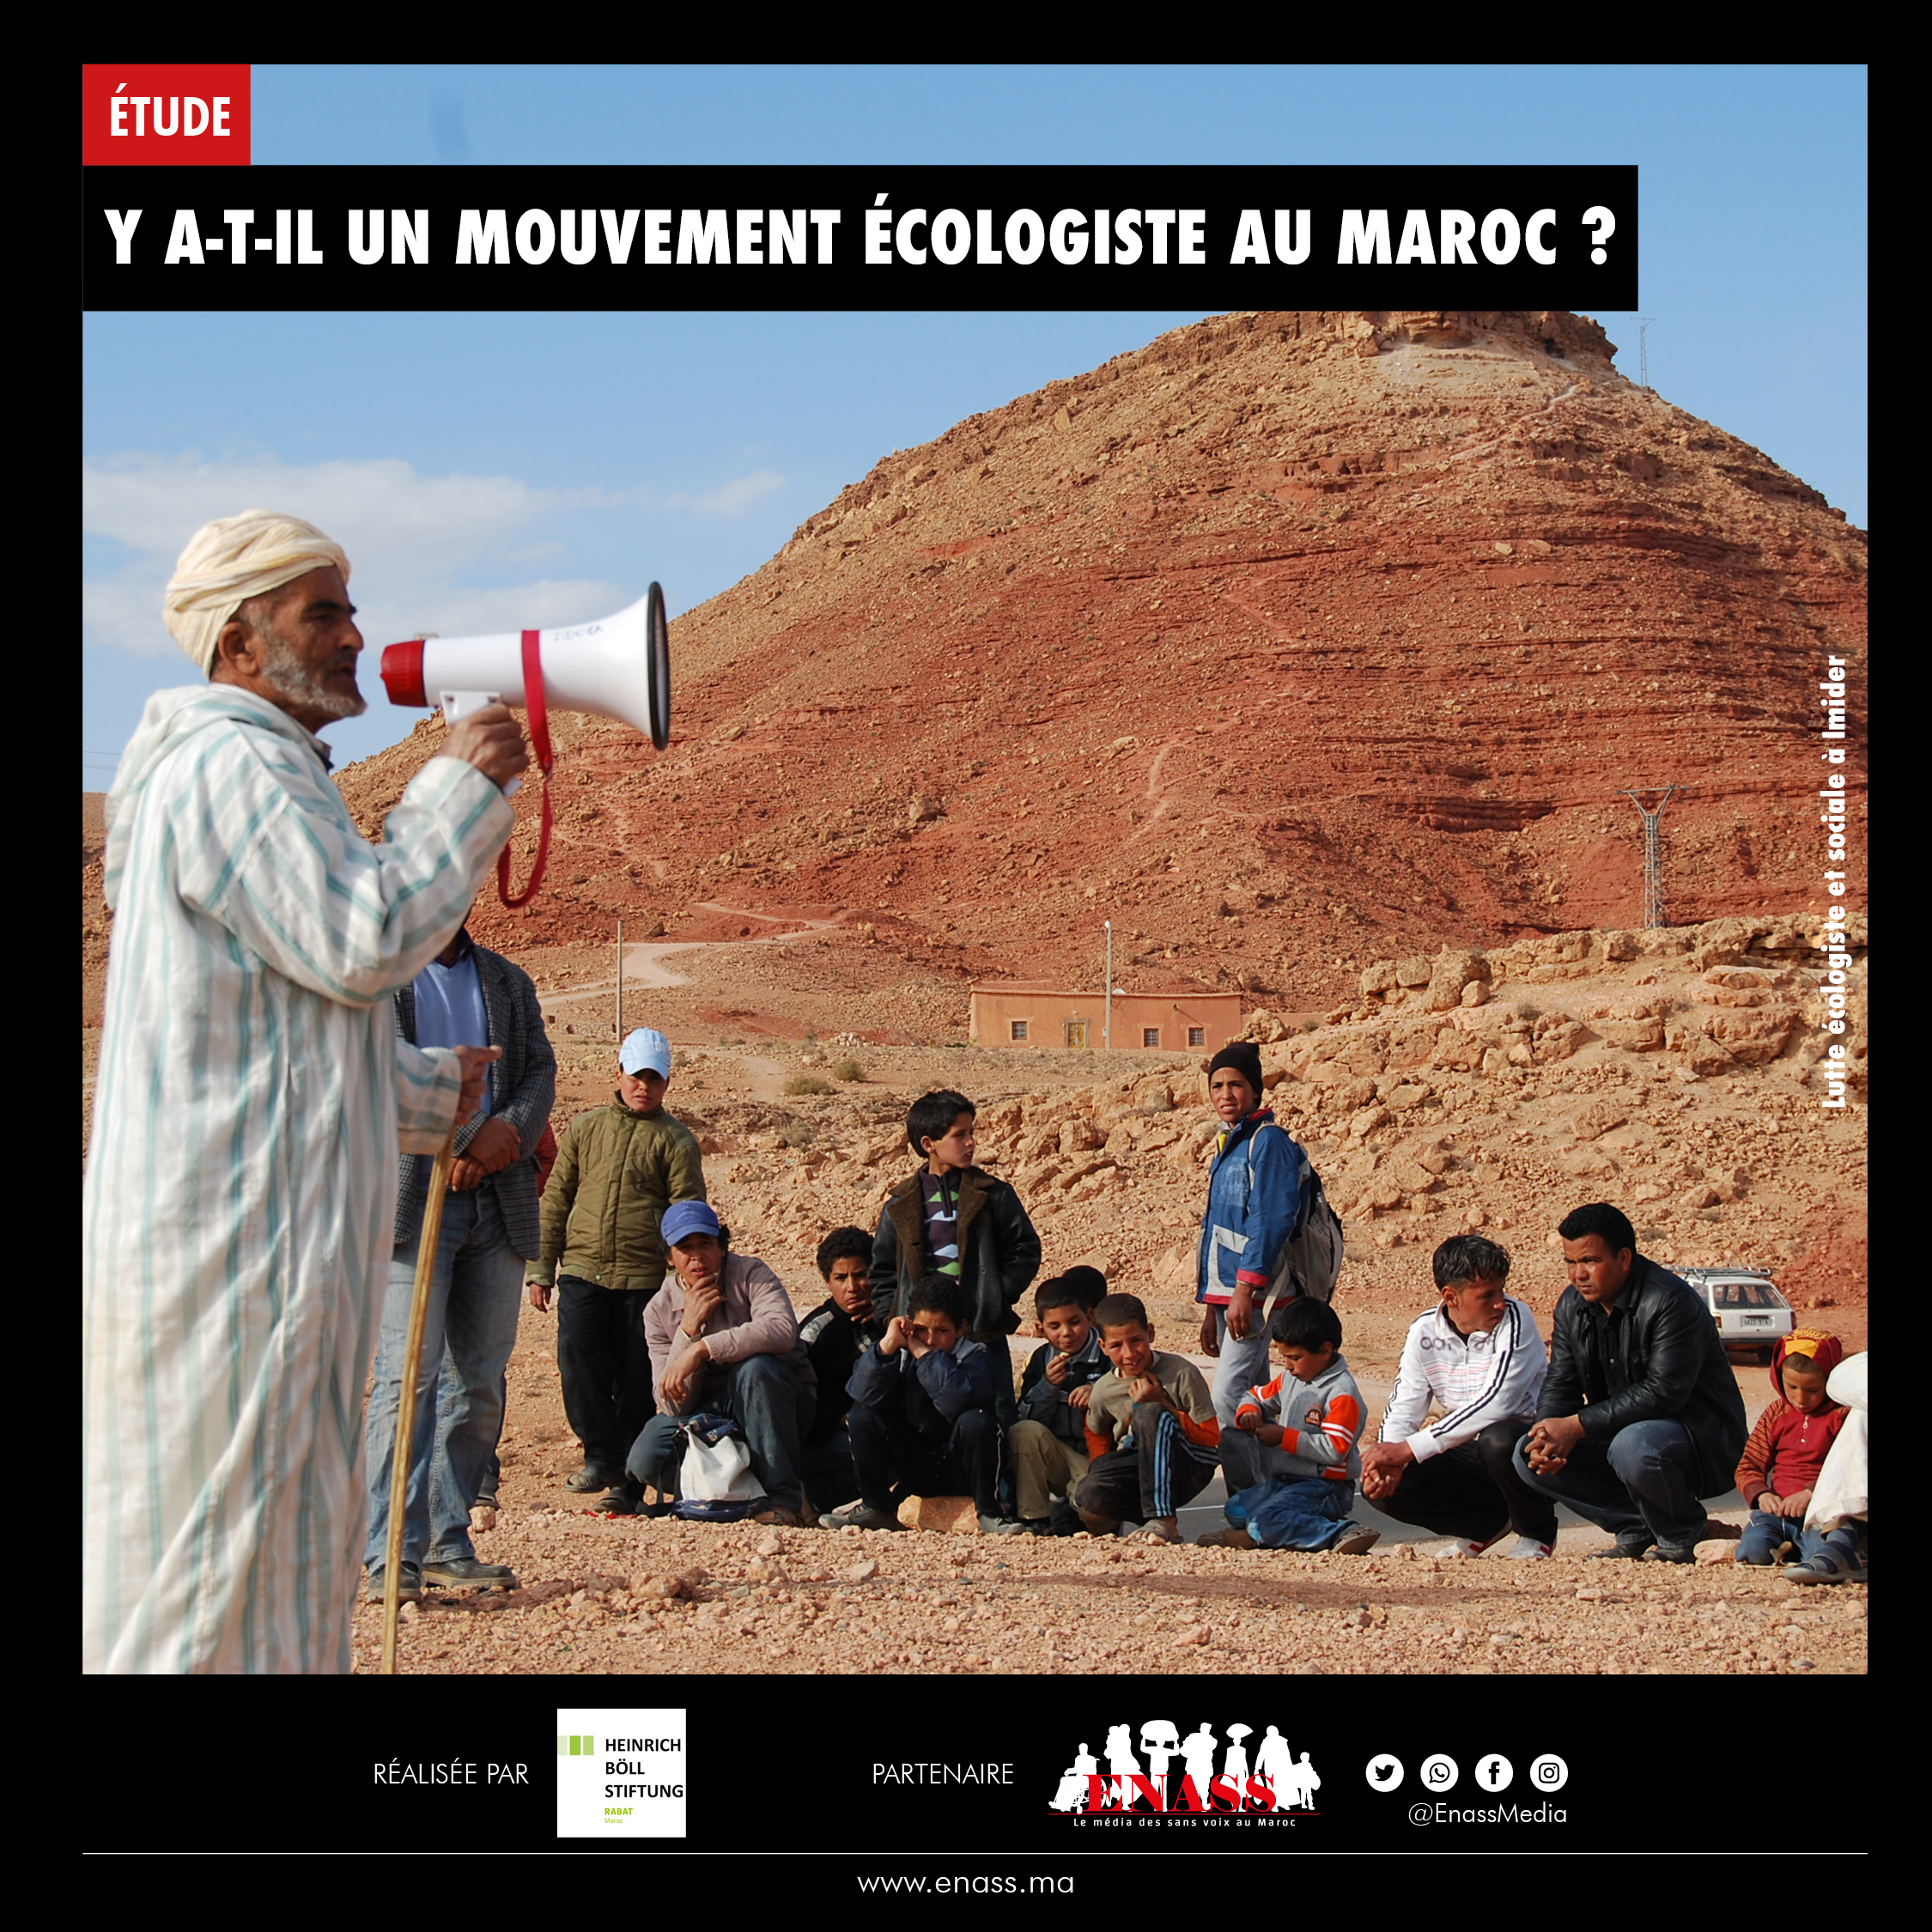 Y a-t-il un mouvement écologiste au Maroc ?